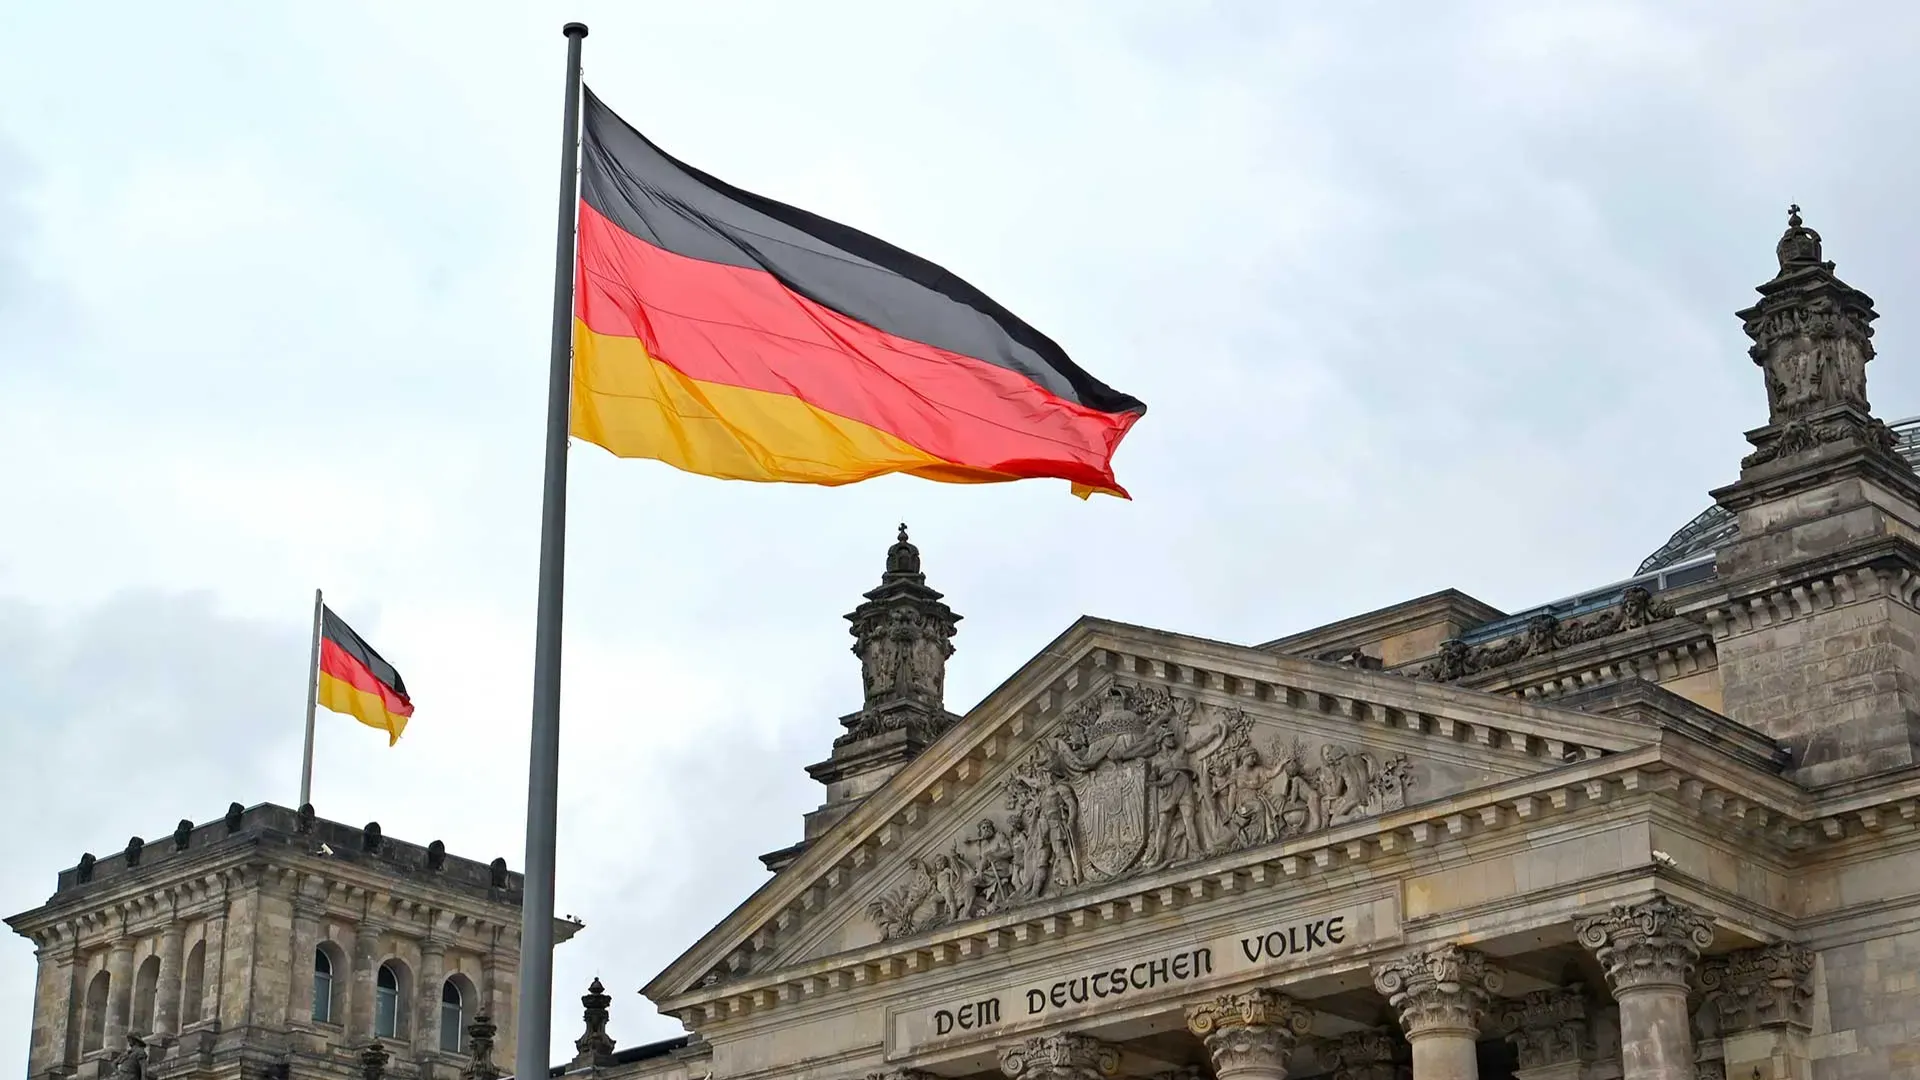 Политолог Светов: разрыв договора, который объединил Германию, может привести к выходу из ФРГ...